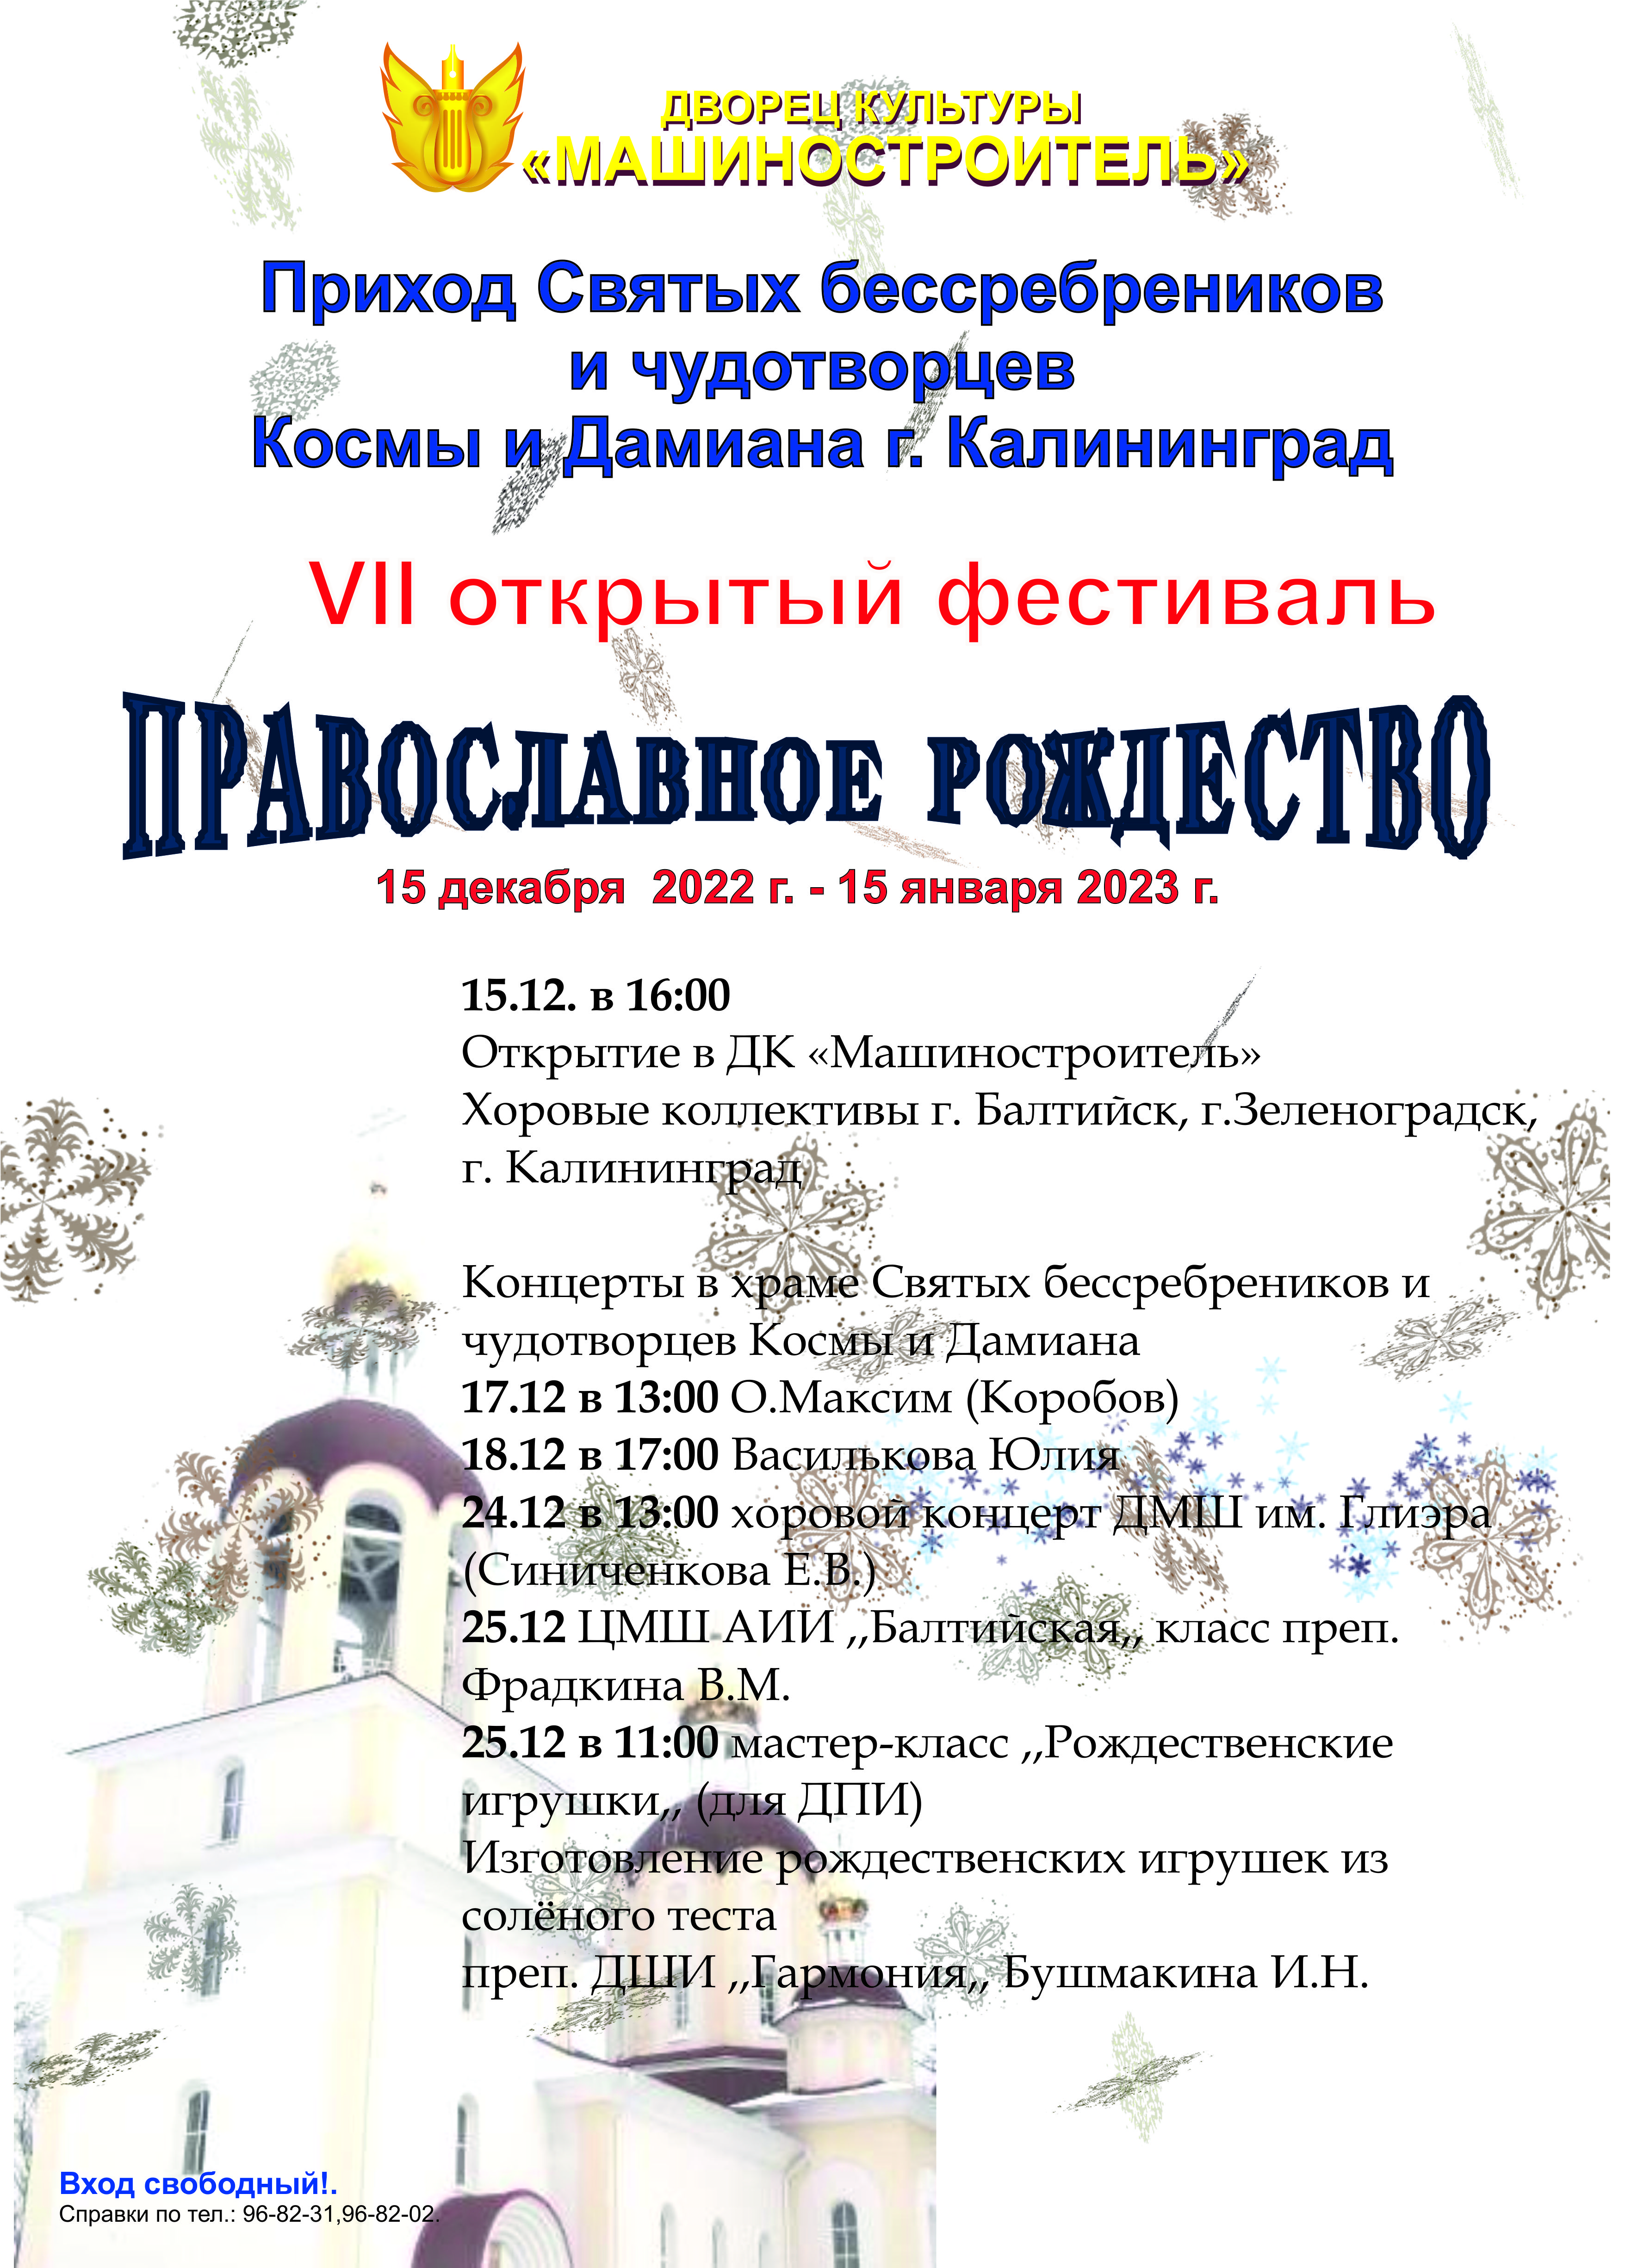 VII Открытый фестиваль «Православное Рождество»